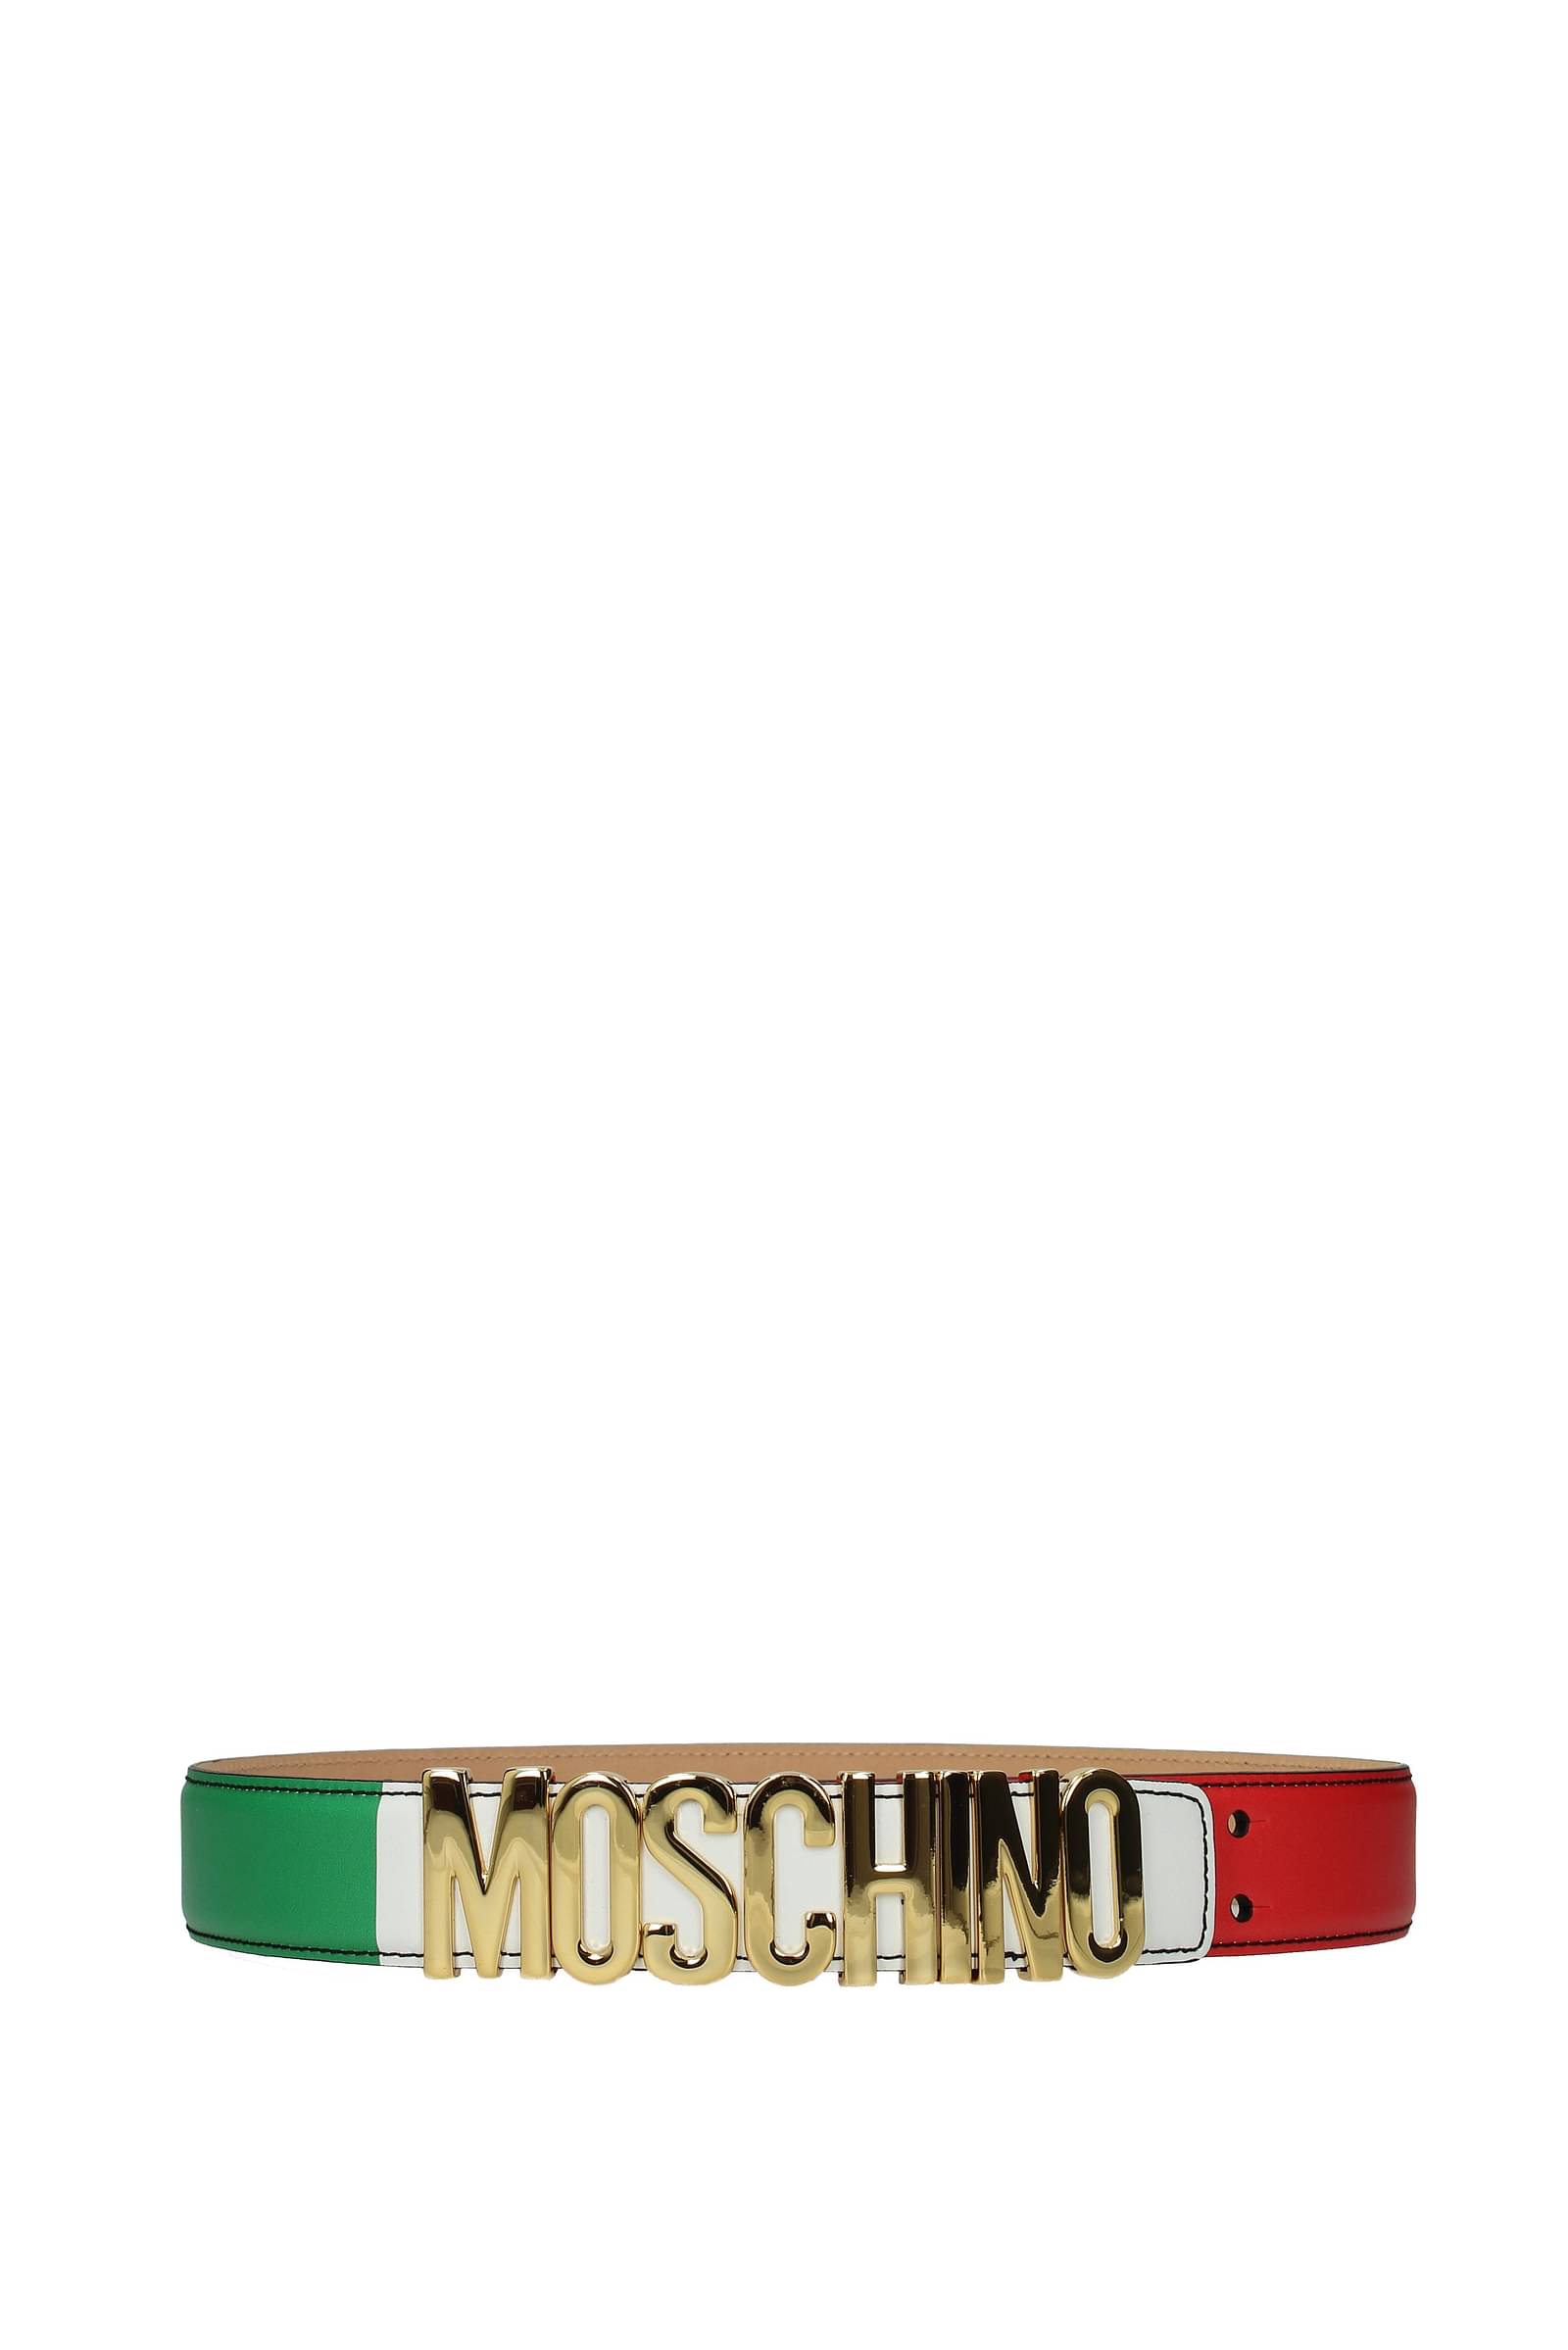 Moschino レギュラーベルト 女性 A803880242888 皮革 マルチカラー 118,13€